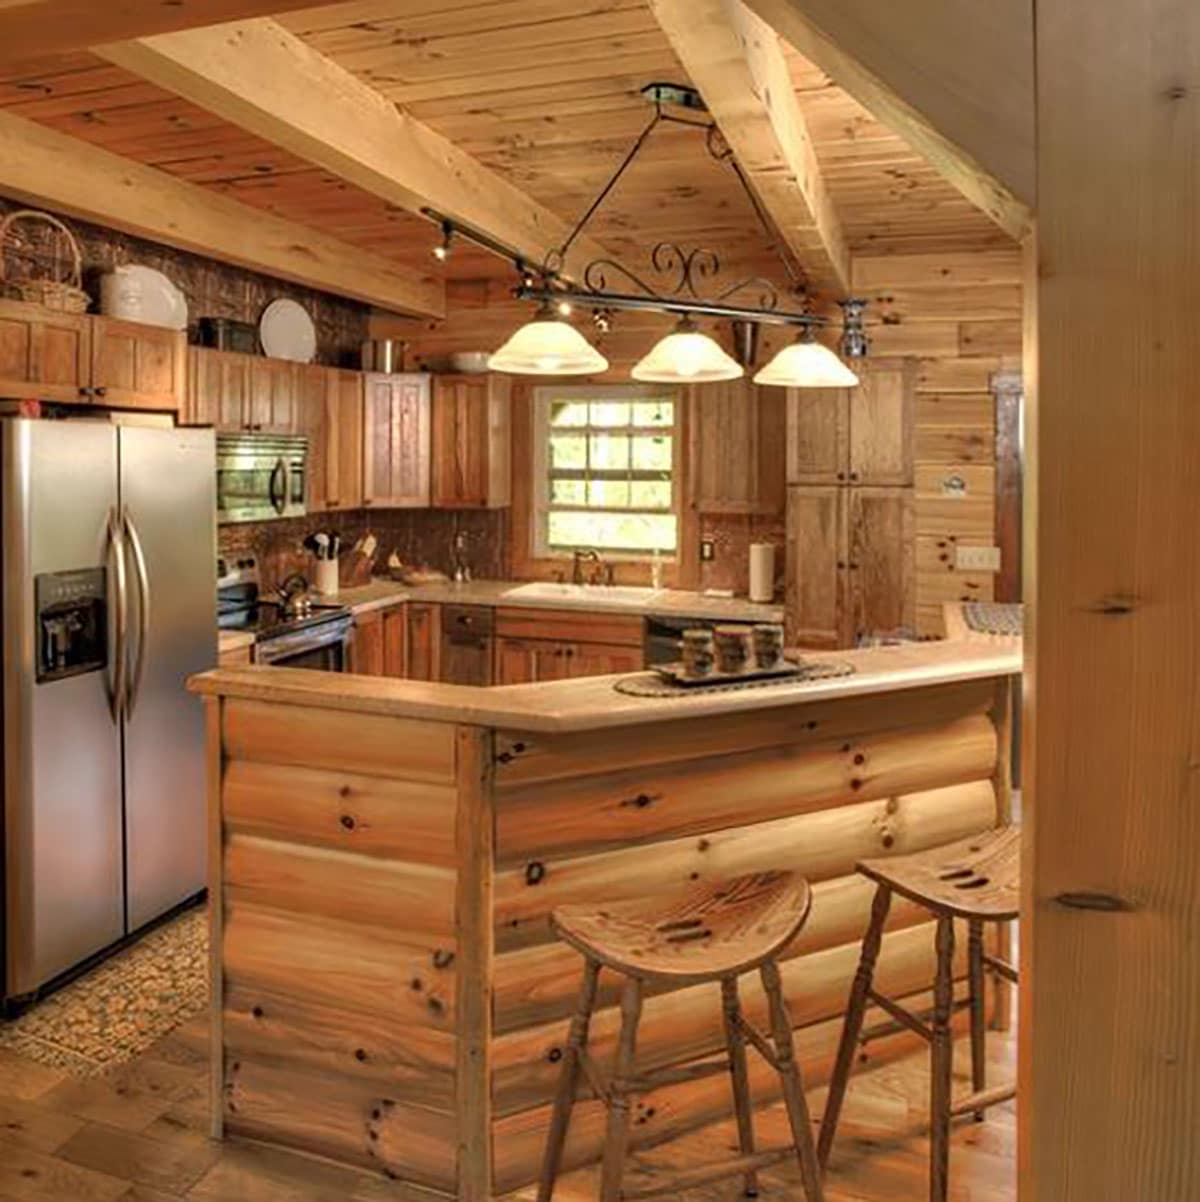 Rustic Log Cut Kitchens